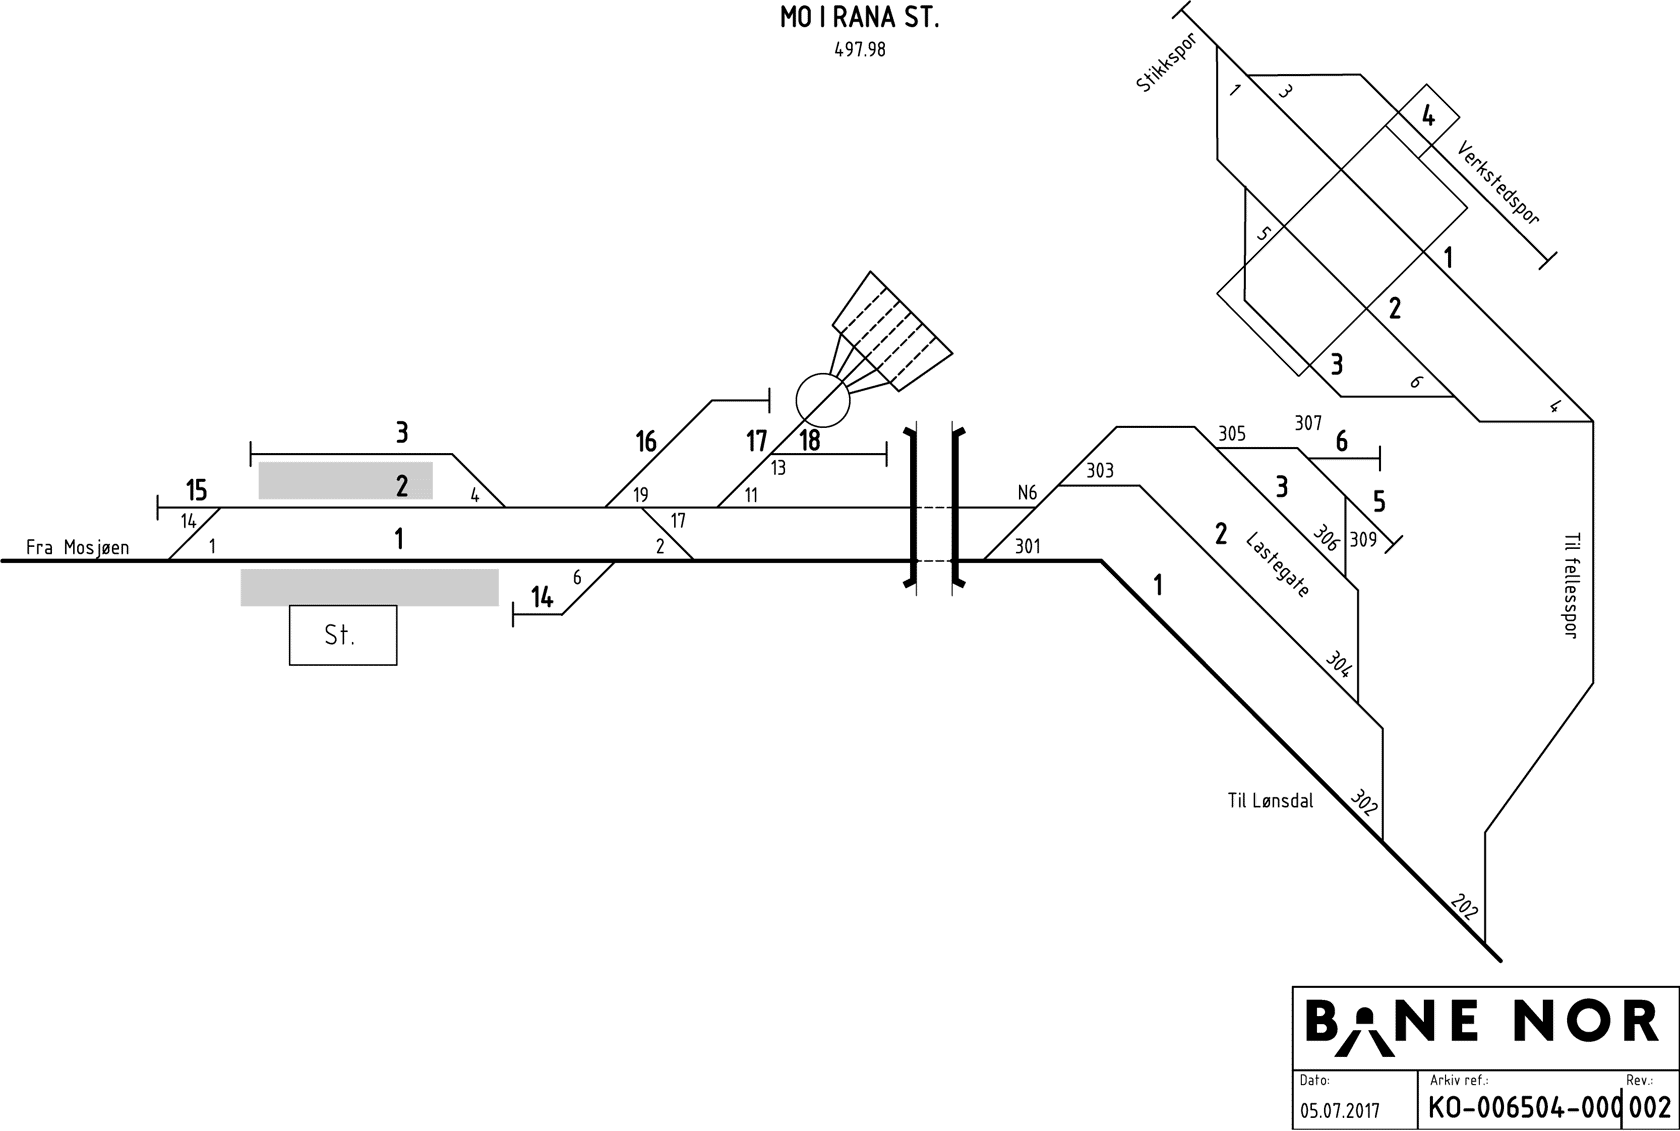 Track plan Mo i Rana station